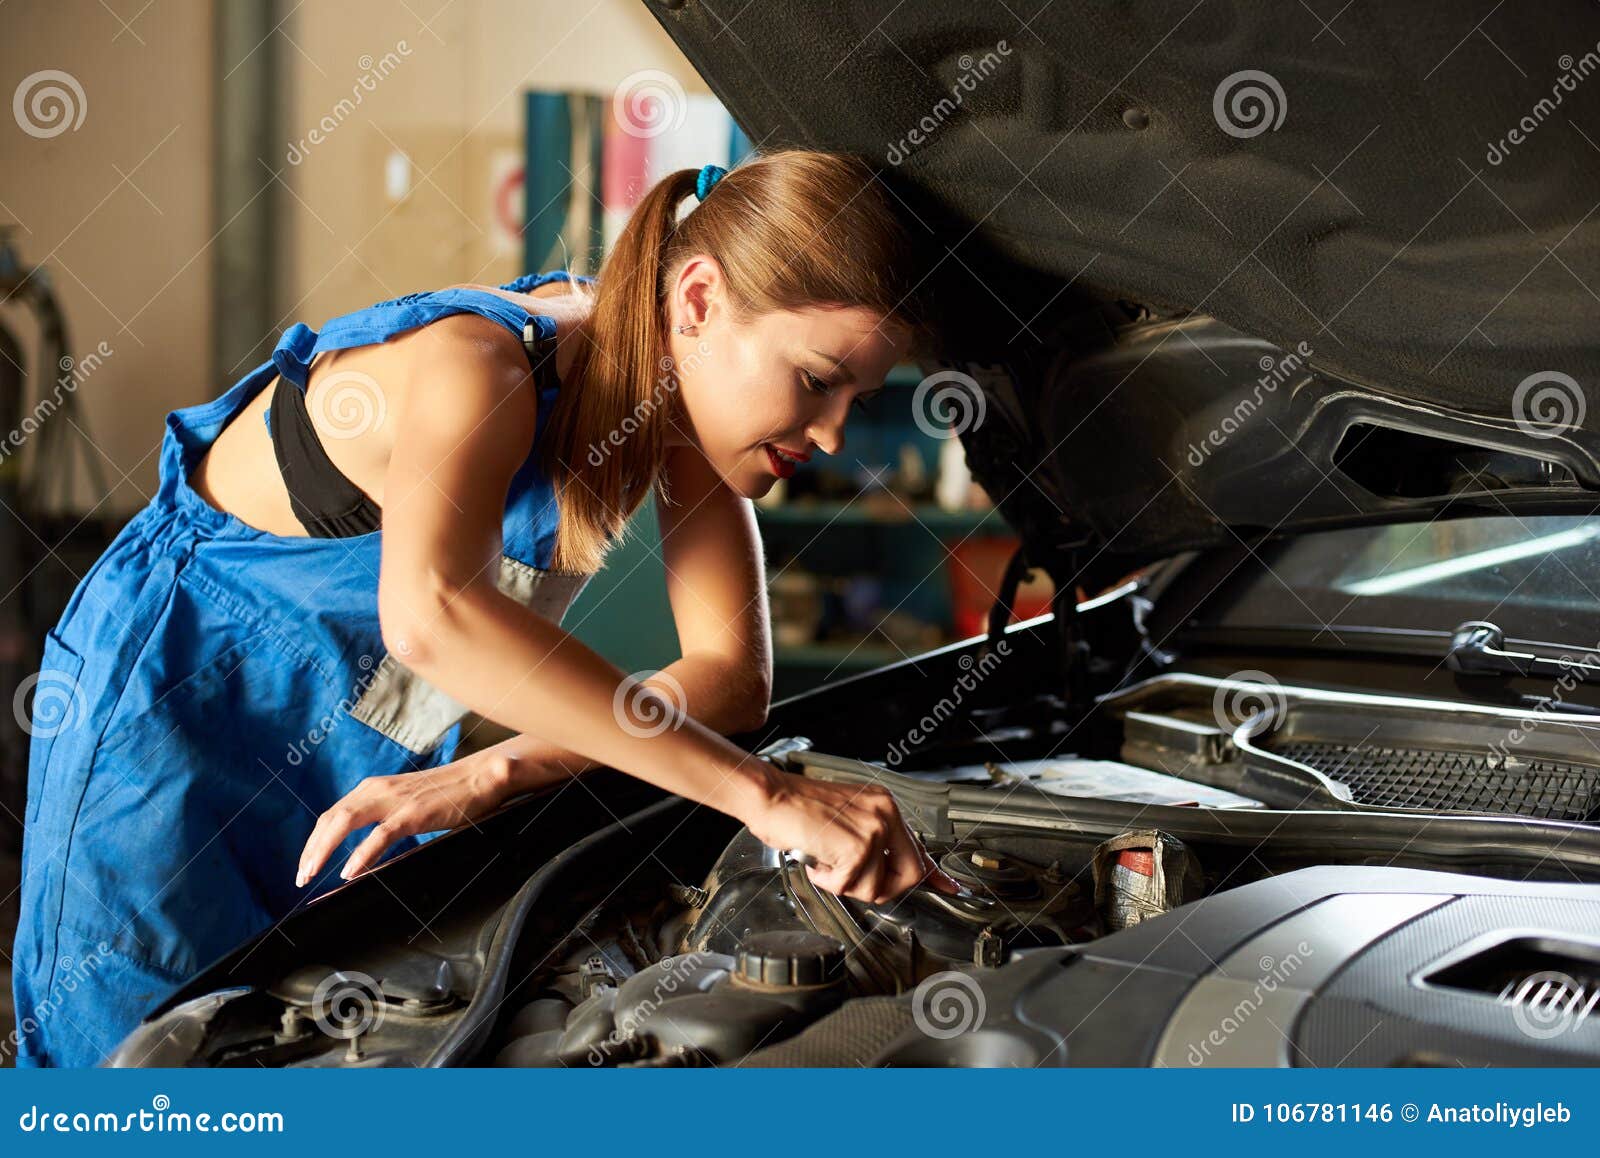 Прекрасная автомеханик берет. Девушка чинит машину. Девушка ремонтирует машину. Женщина автомеханик. Девушка автослесарь.